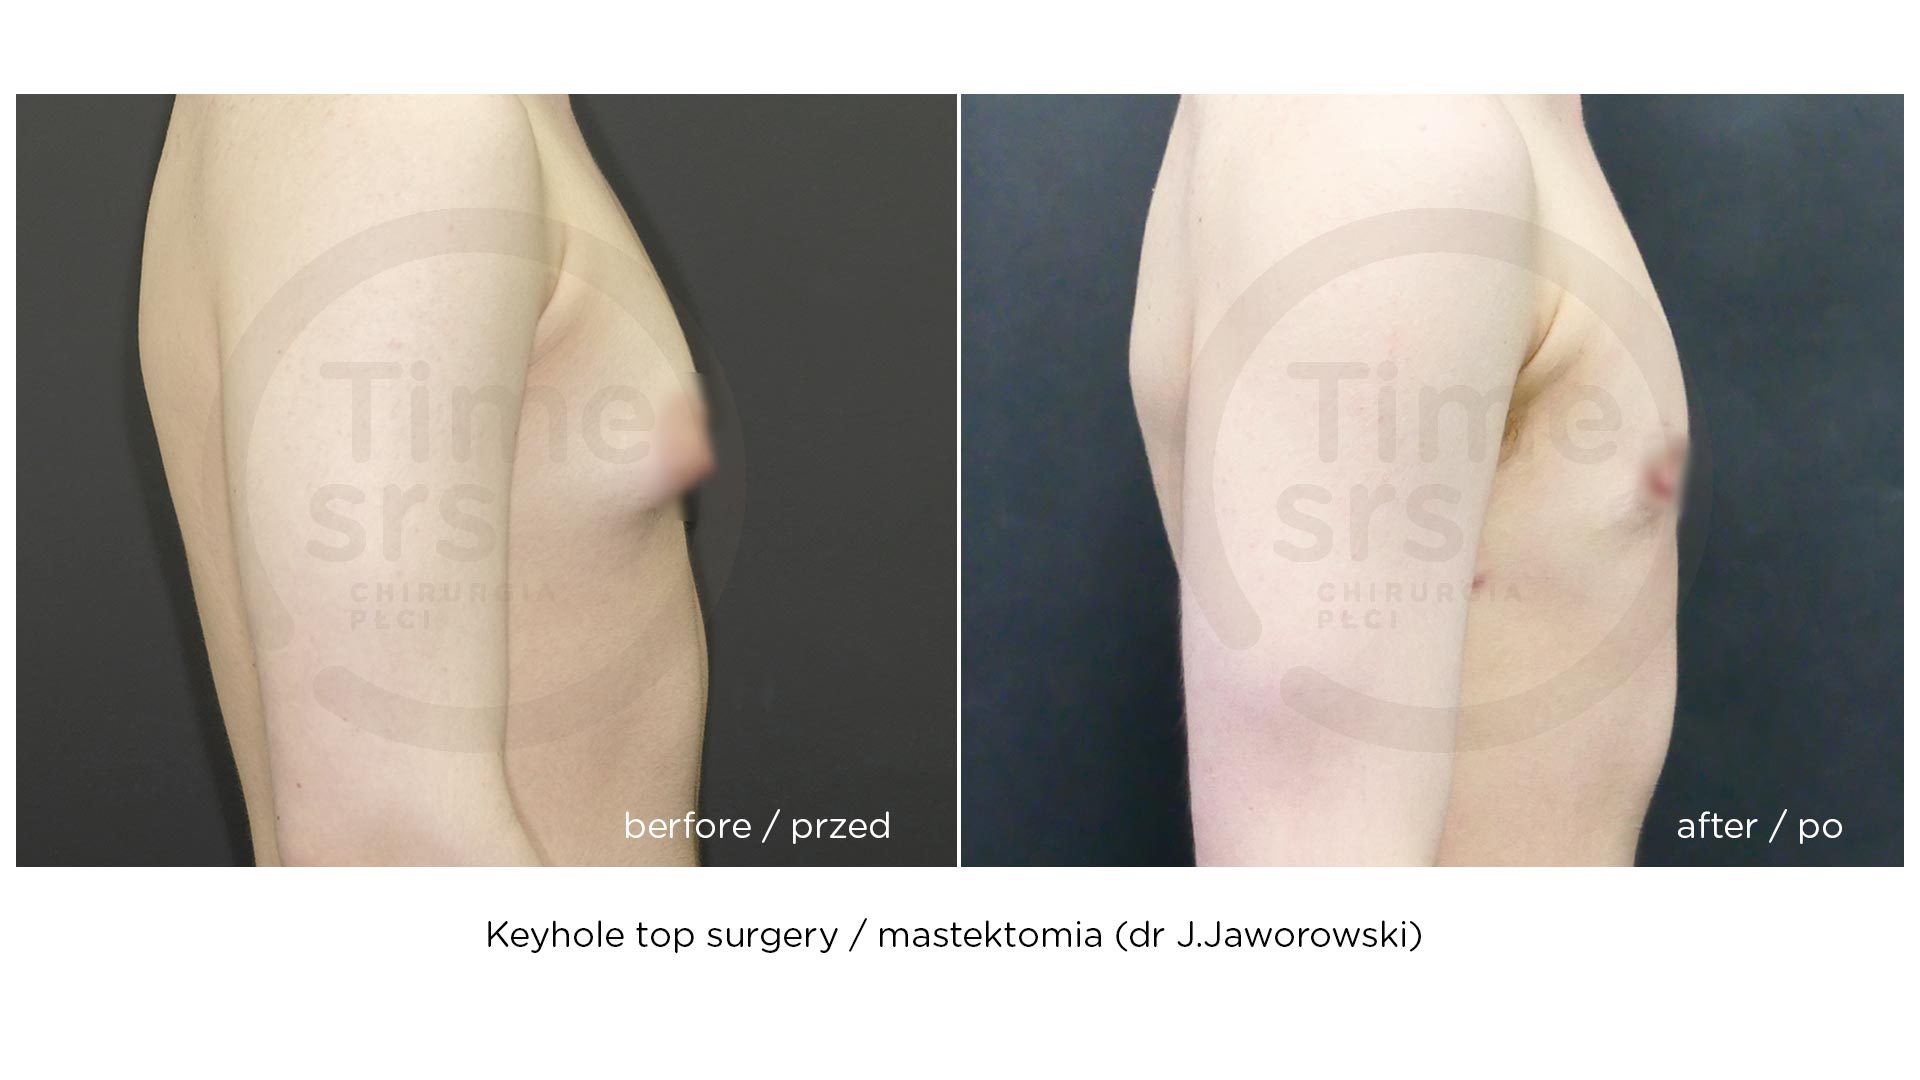 top surgery - mastektomia keyhole - przed i efekt po operacji